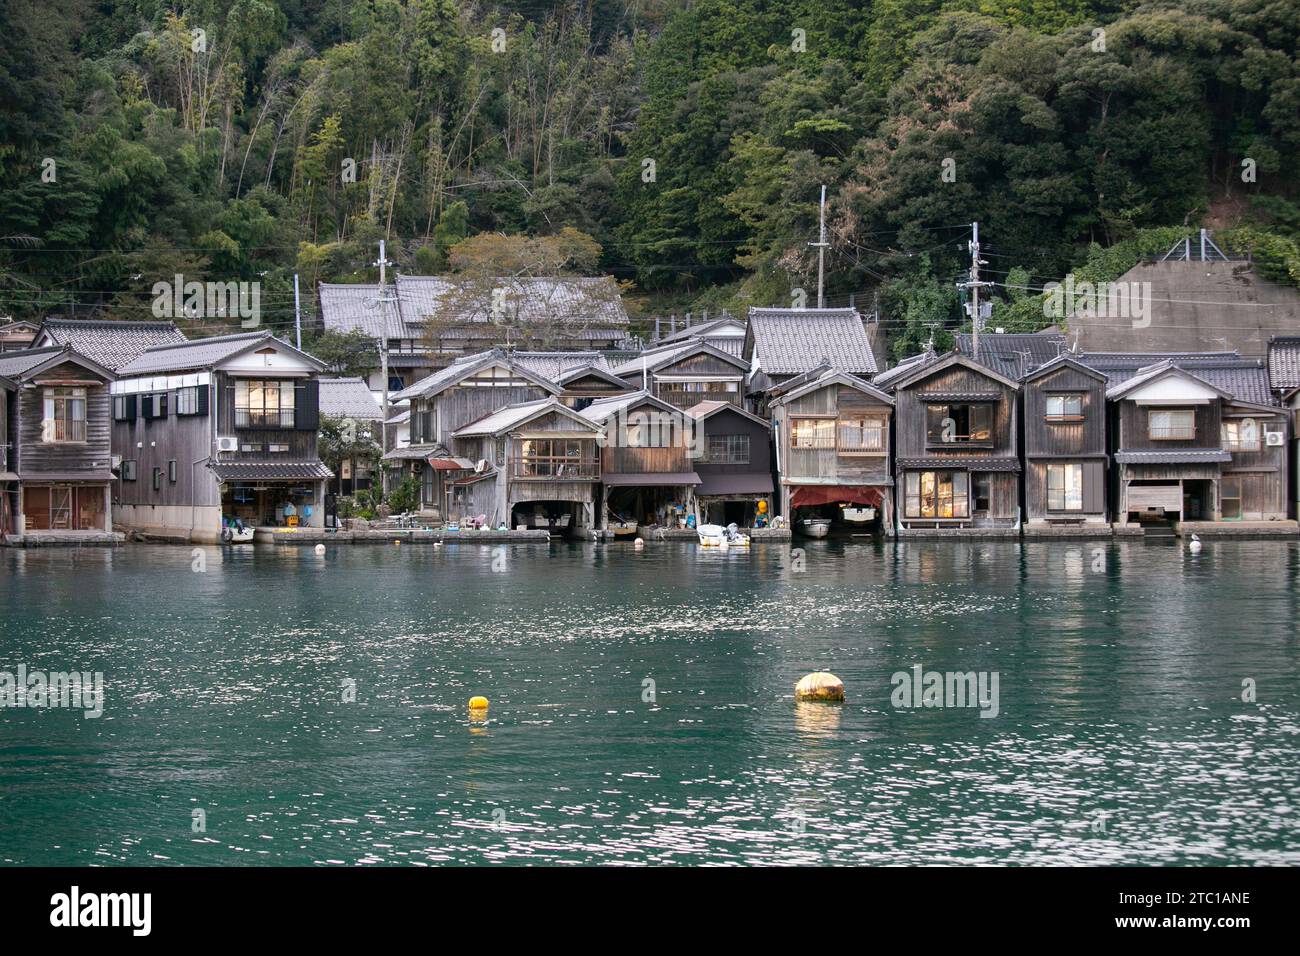 Splendido villaggio di pescatori di Ine, a nord di Kyoto. Funaya o case in barca sono tradizionali case in legno costruite sulla riva del mare. Foto Stock